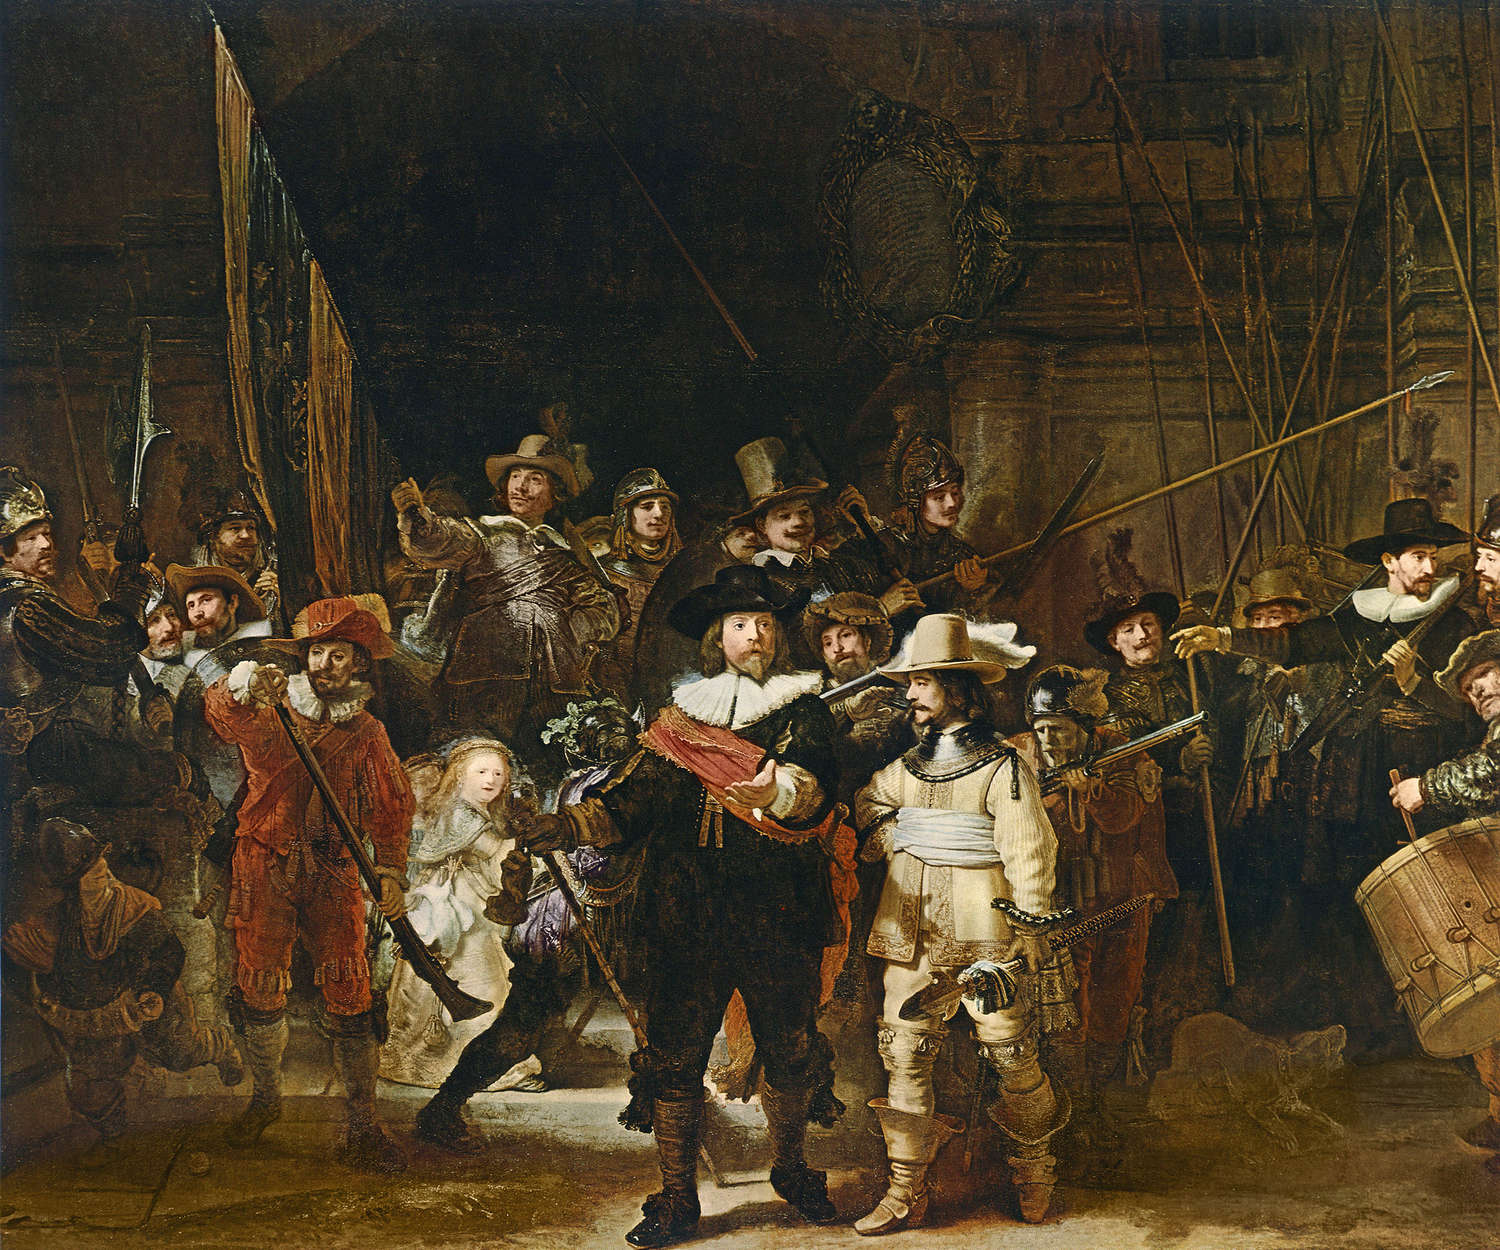             Mural "La guardia nocturna" de Rembrandt van Rijn
        